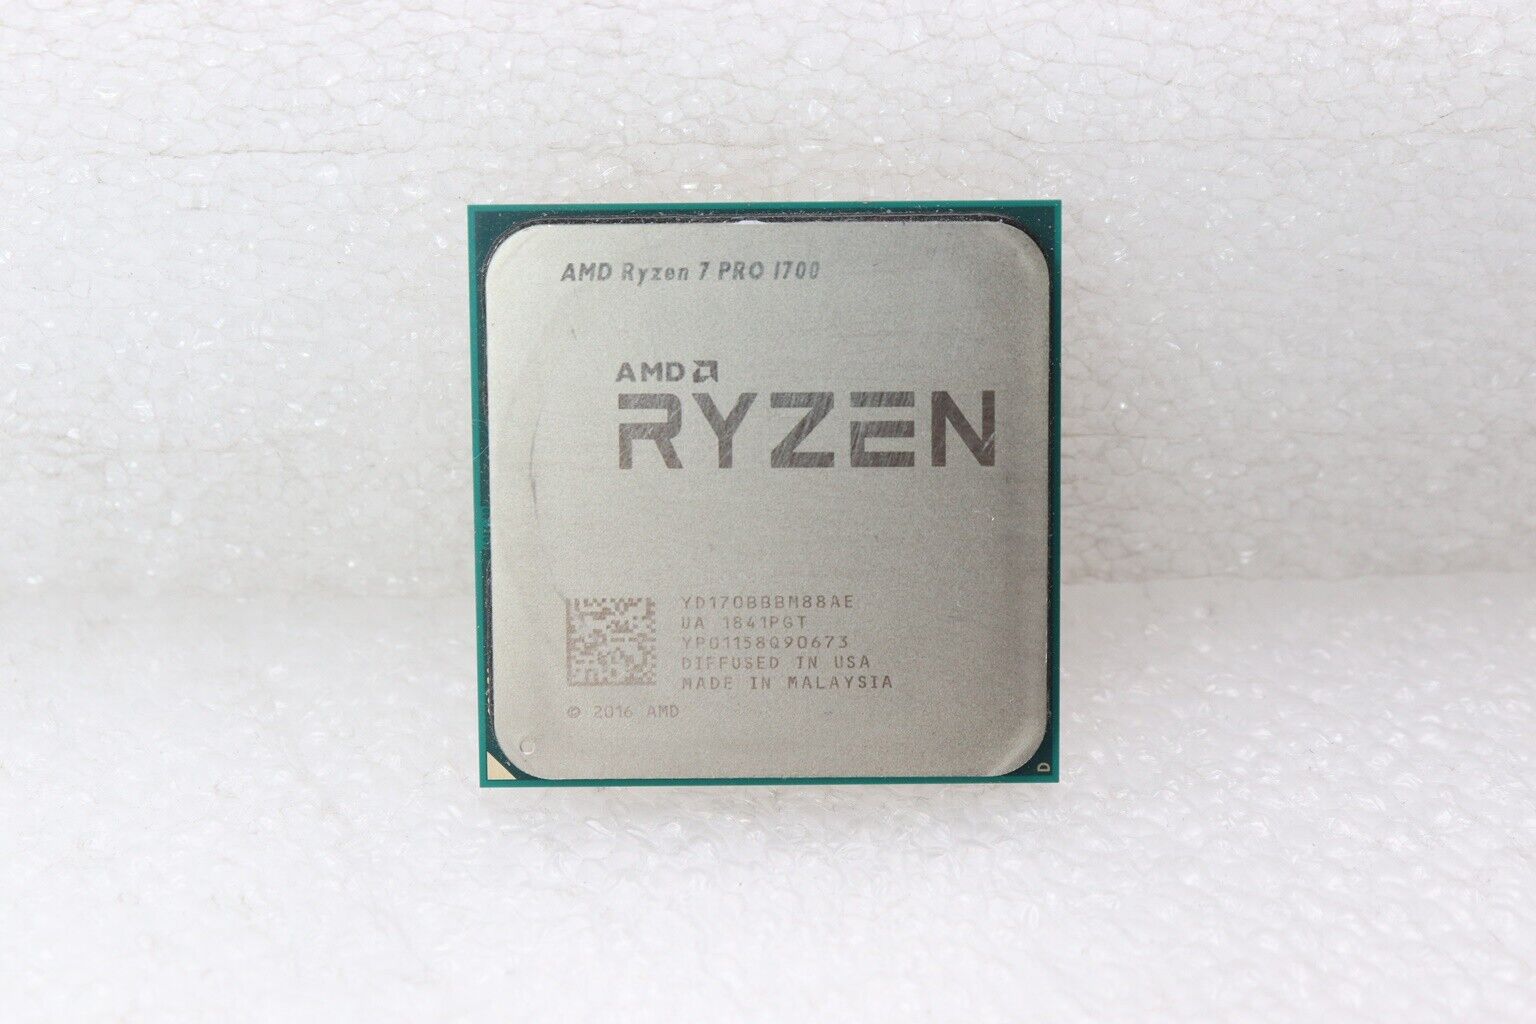 AMD RYZEN 7 PRO 1700 PROCESSOR | 3.00GHZ | YD170BBBM88AE